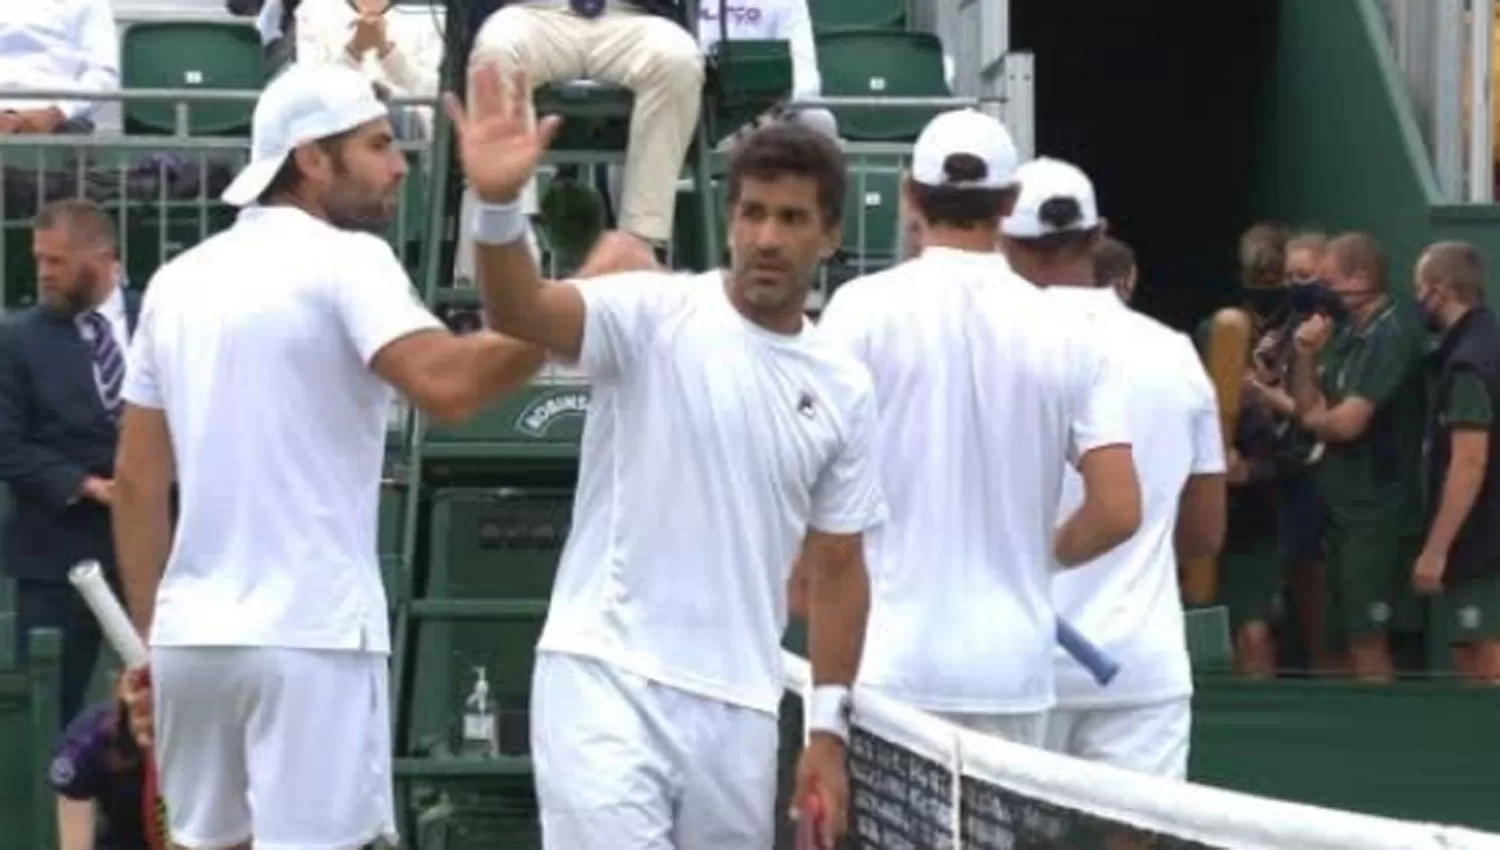 FESTEJO. El argentino Máximo González saluda luego de conseguir el pase a semifinales de Wimbledon.